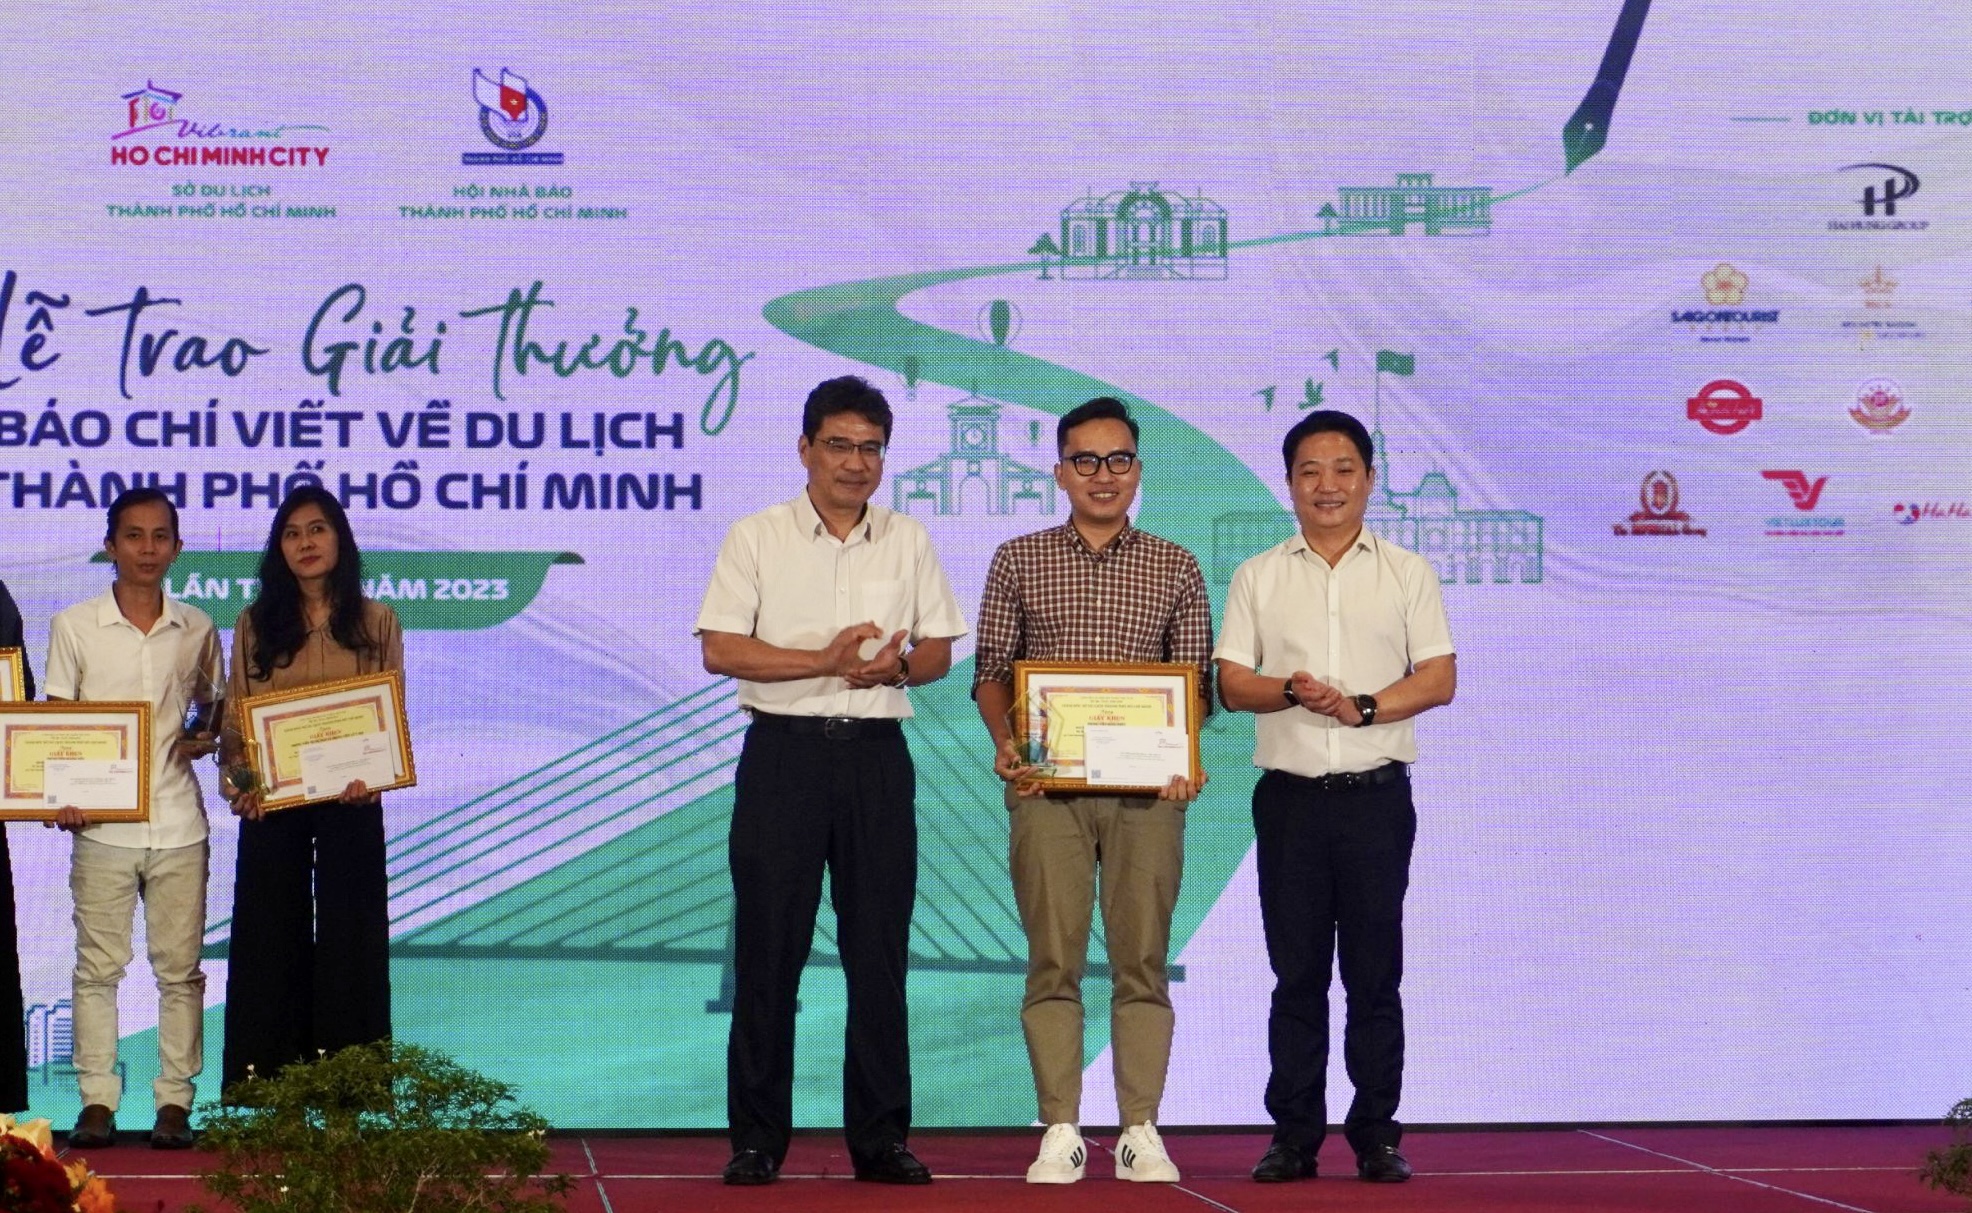 Báo Dân Việt đoạt giải Nhất giải Báo chí viết về du lịch TP.HCM 2023 - Ảnh 1.